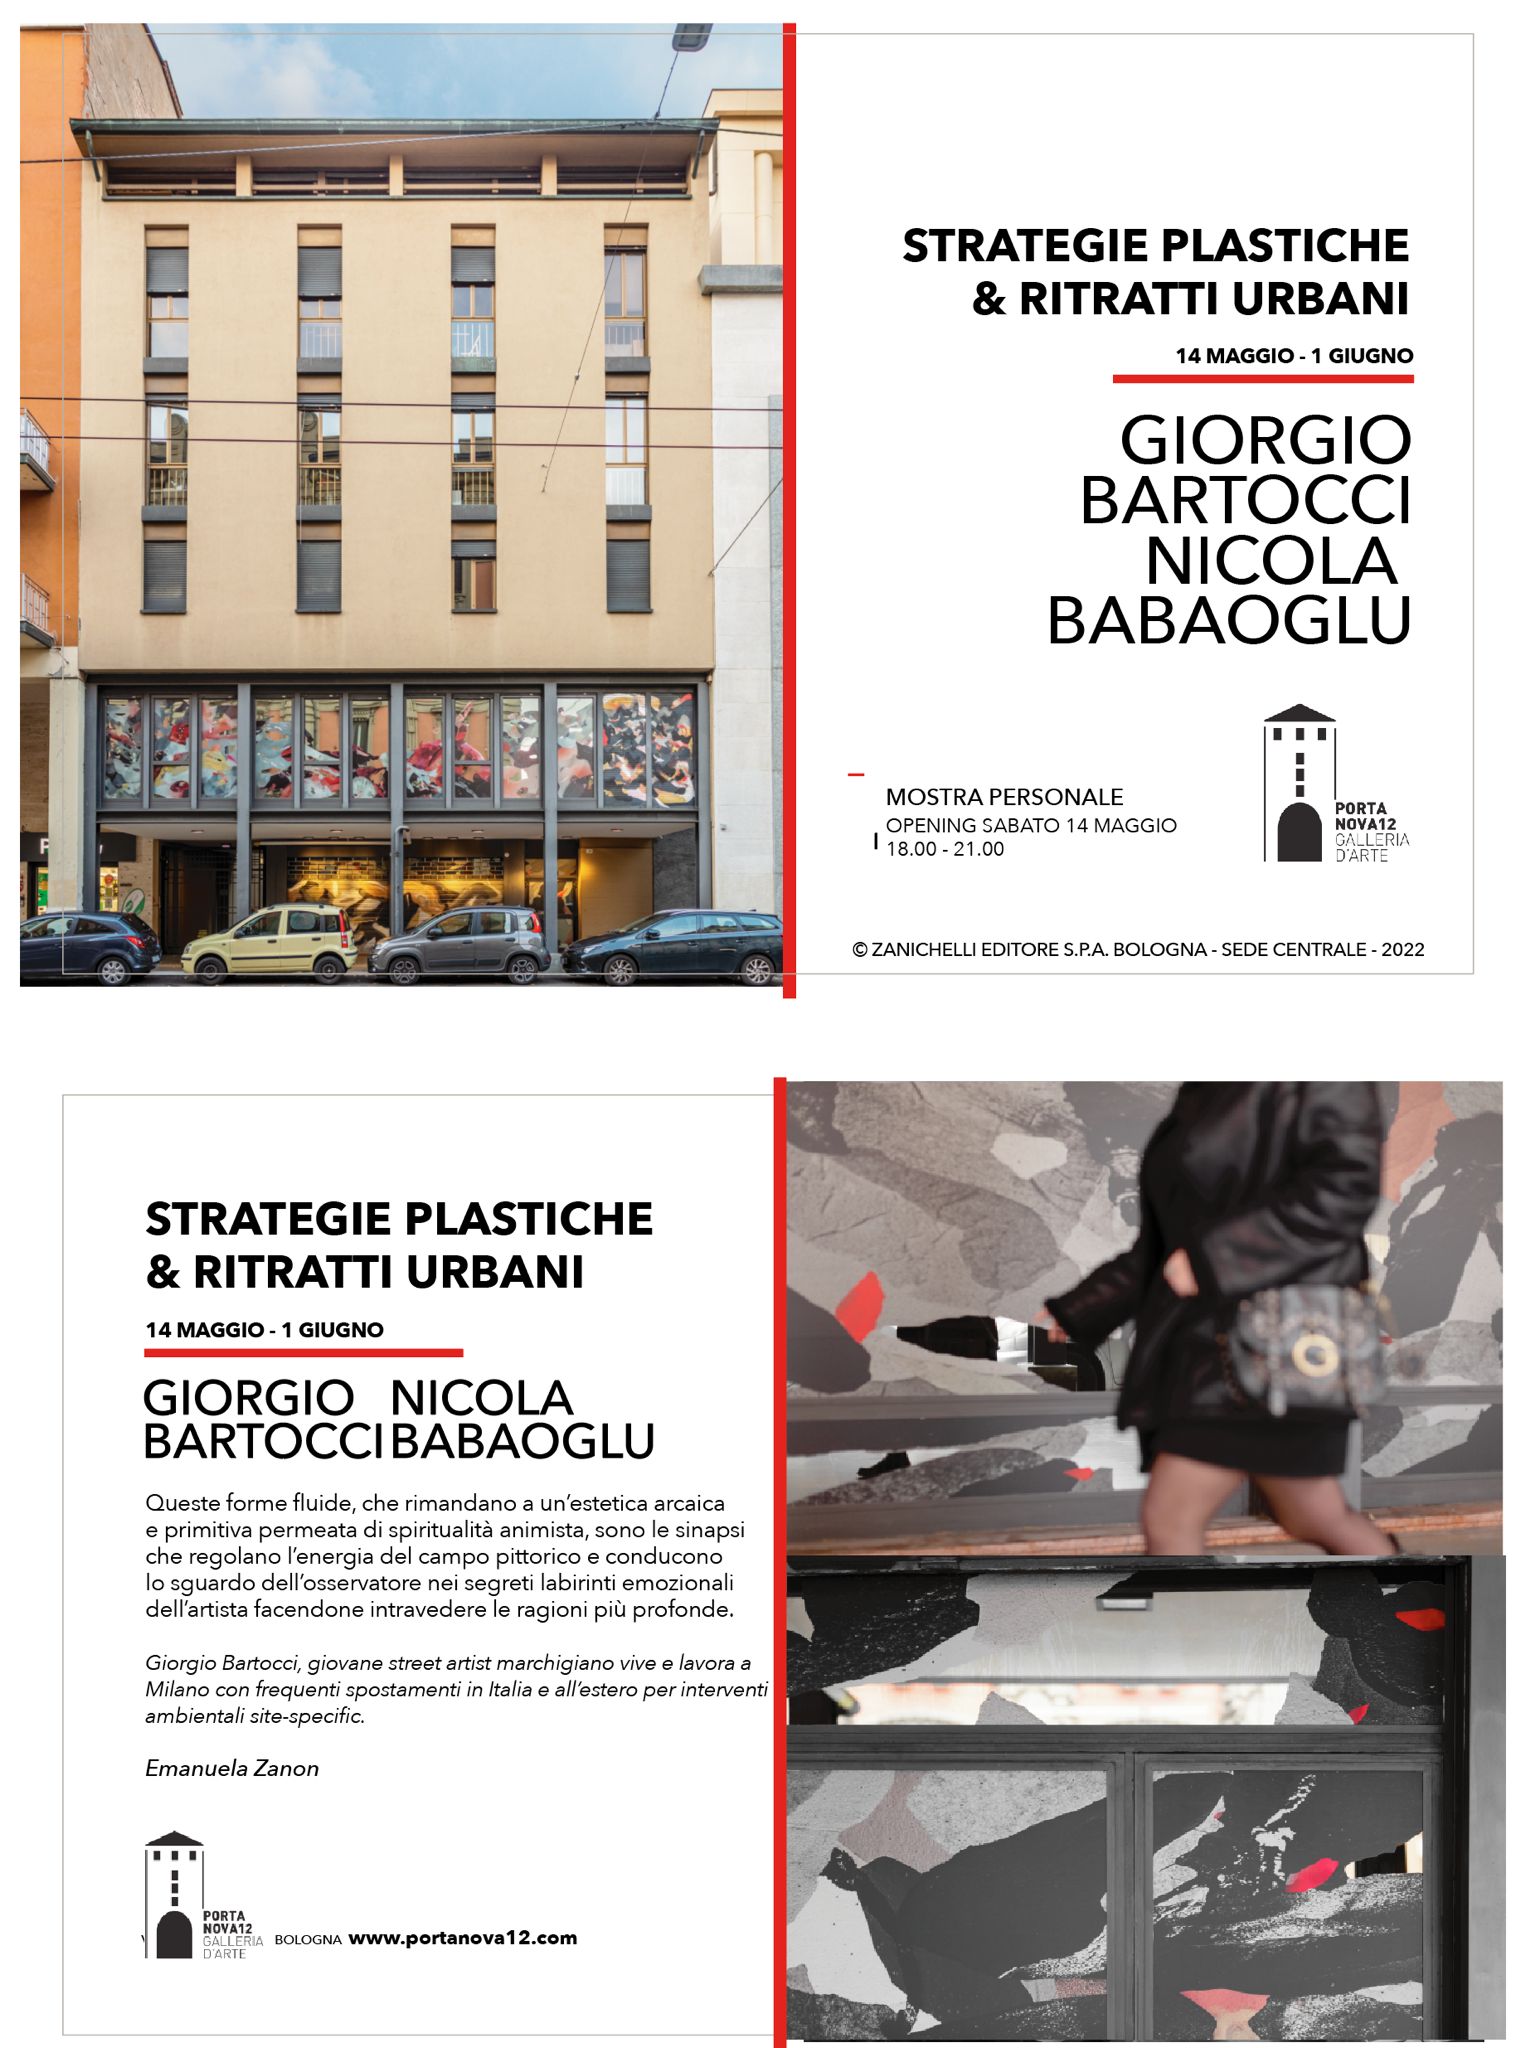 Giorgio Bartocci & Nicola Babaoglu – Strategie plastiche e Ritratti urbani